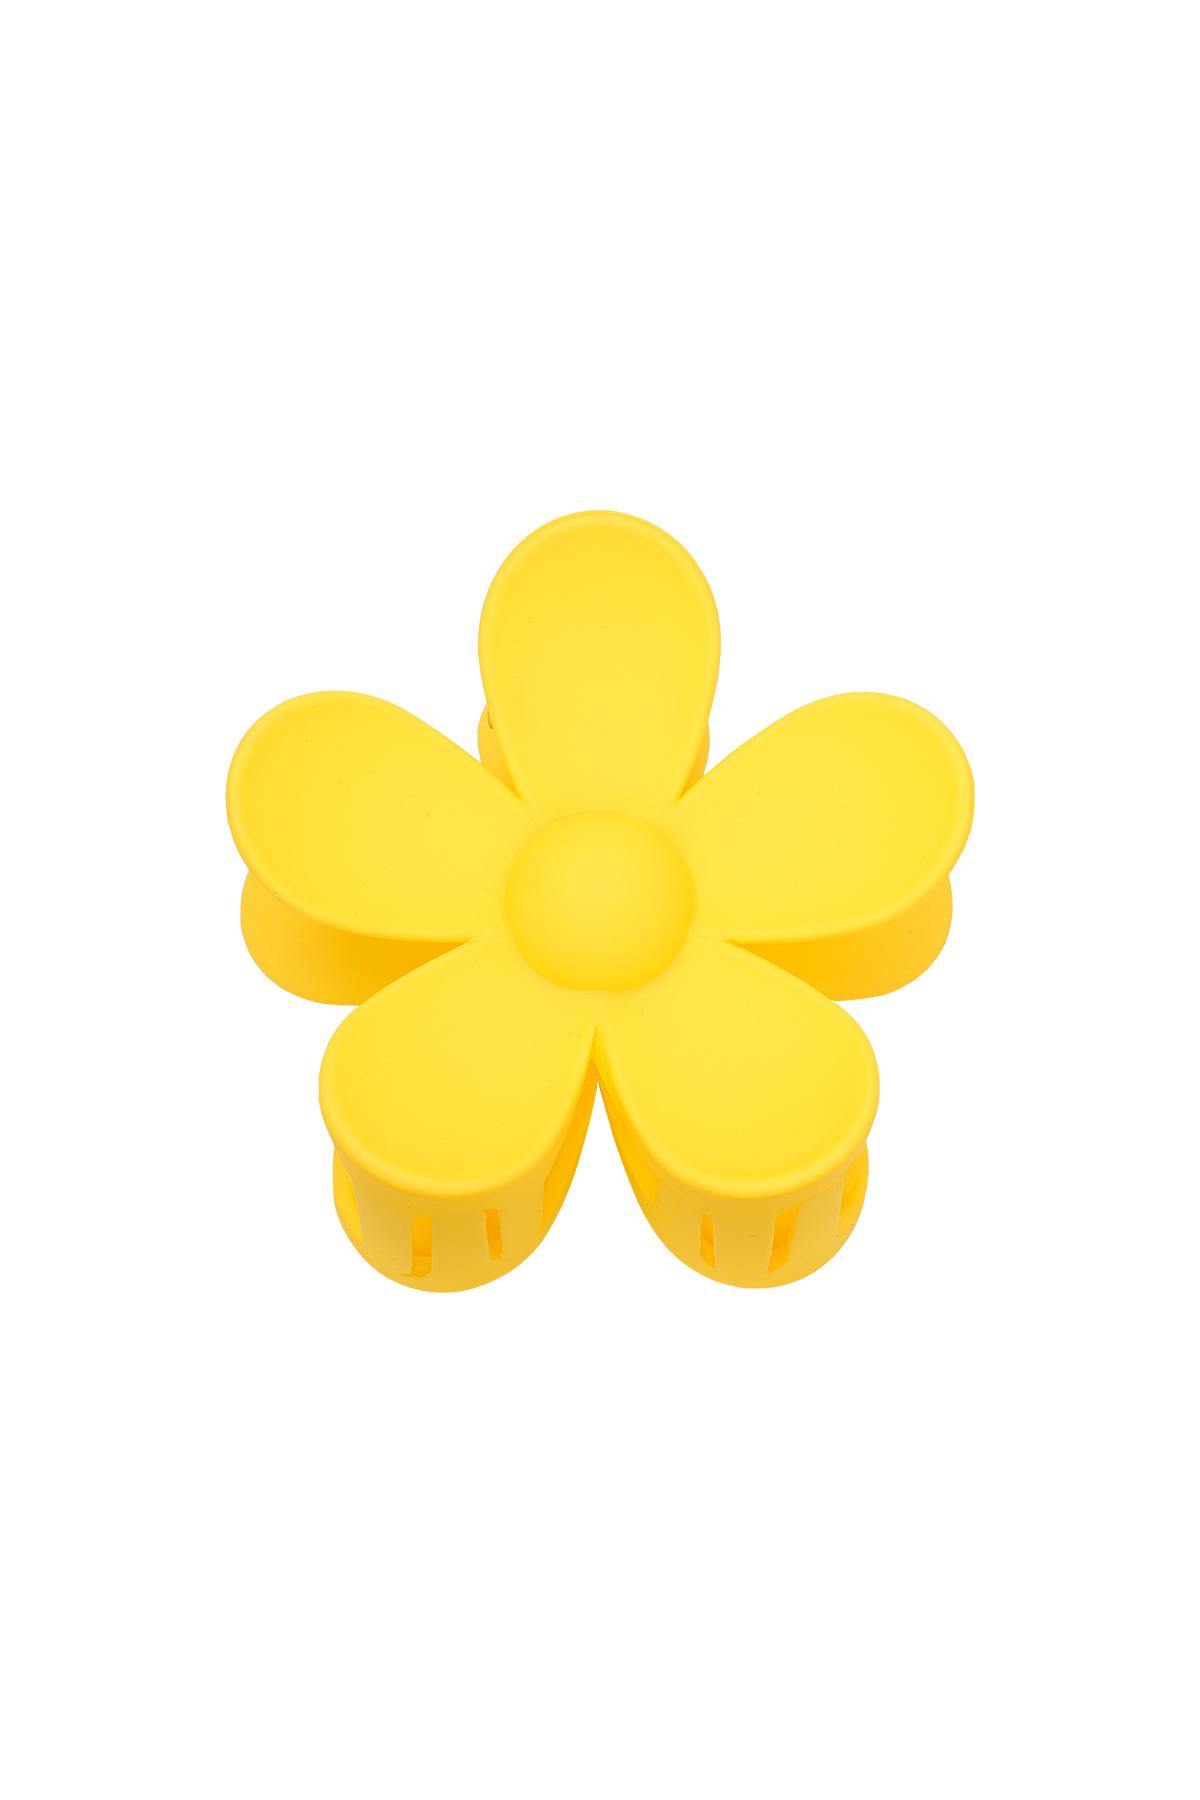 Saç tokası büyük çiçek Yellow Resin h5 